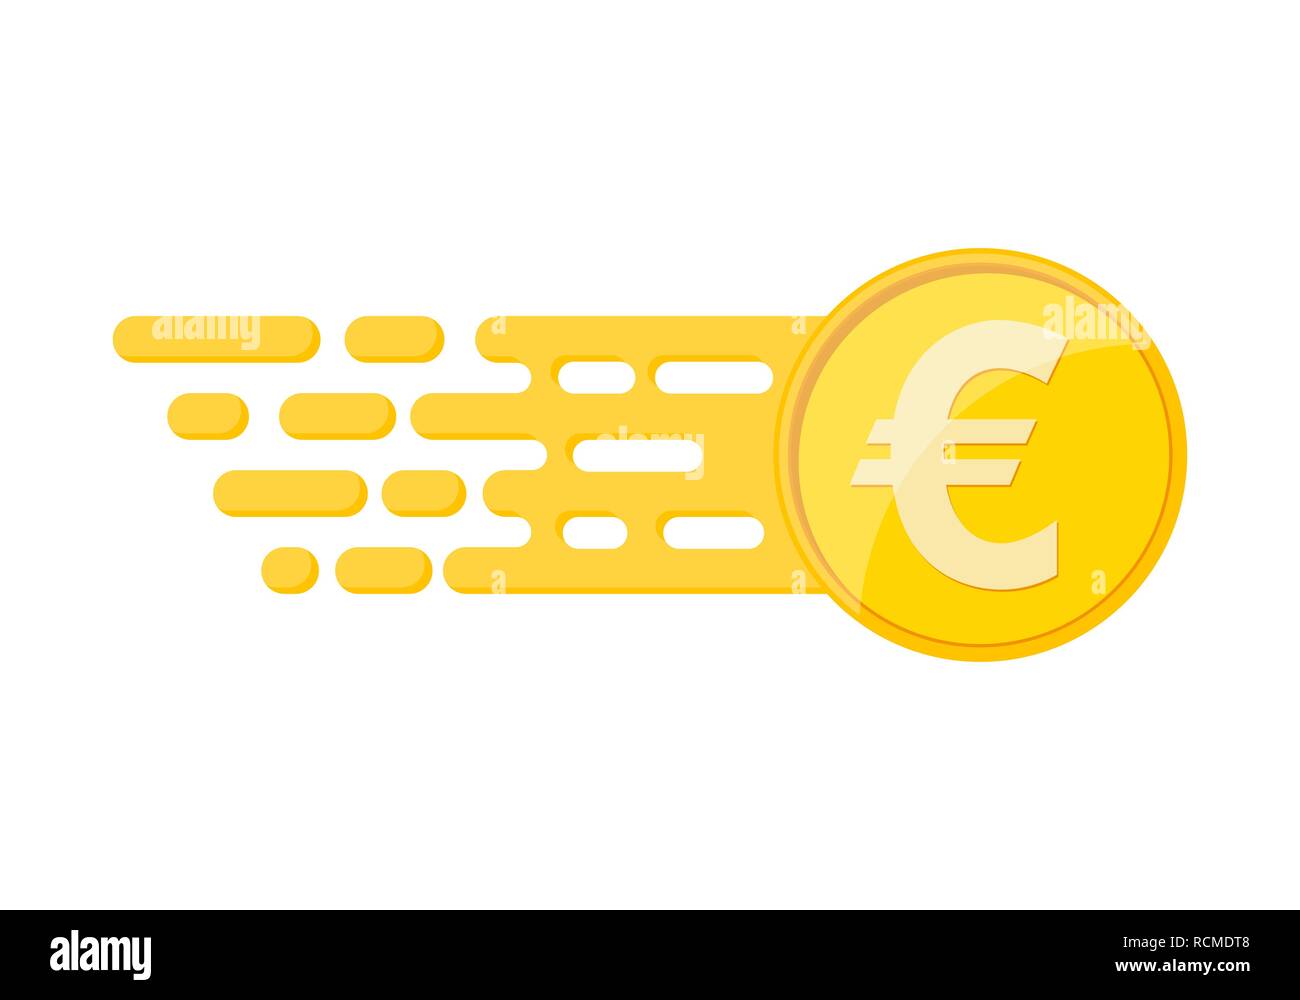 Euro coin in flat design. Vector illustration. Gold euro coin - income concept Stock Vector